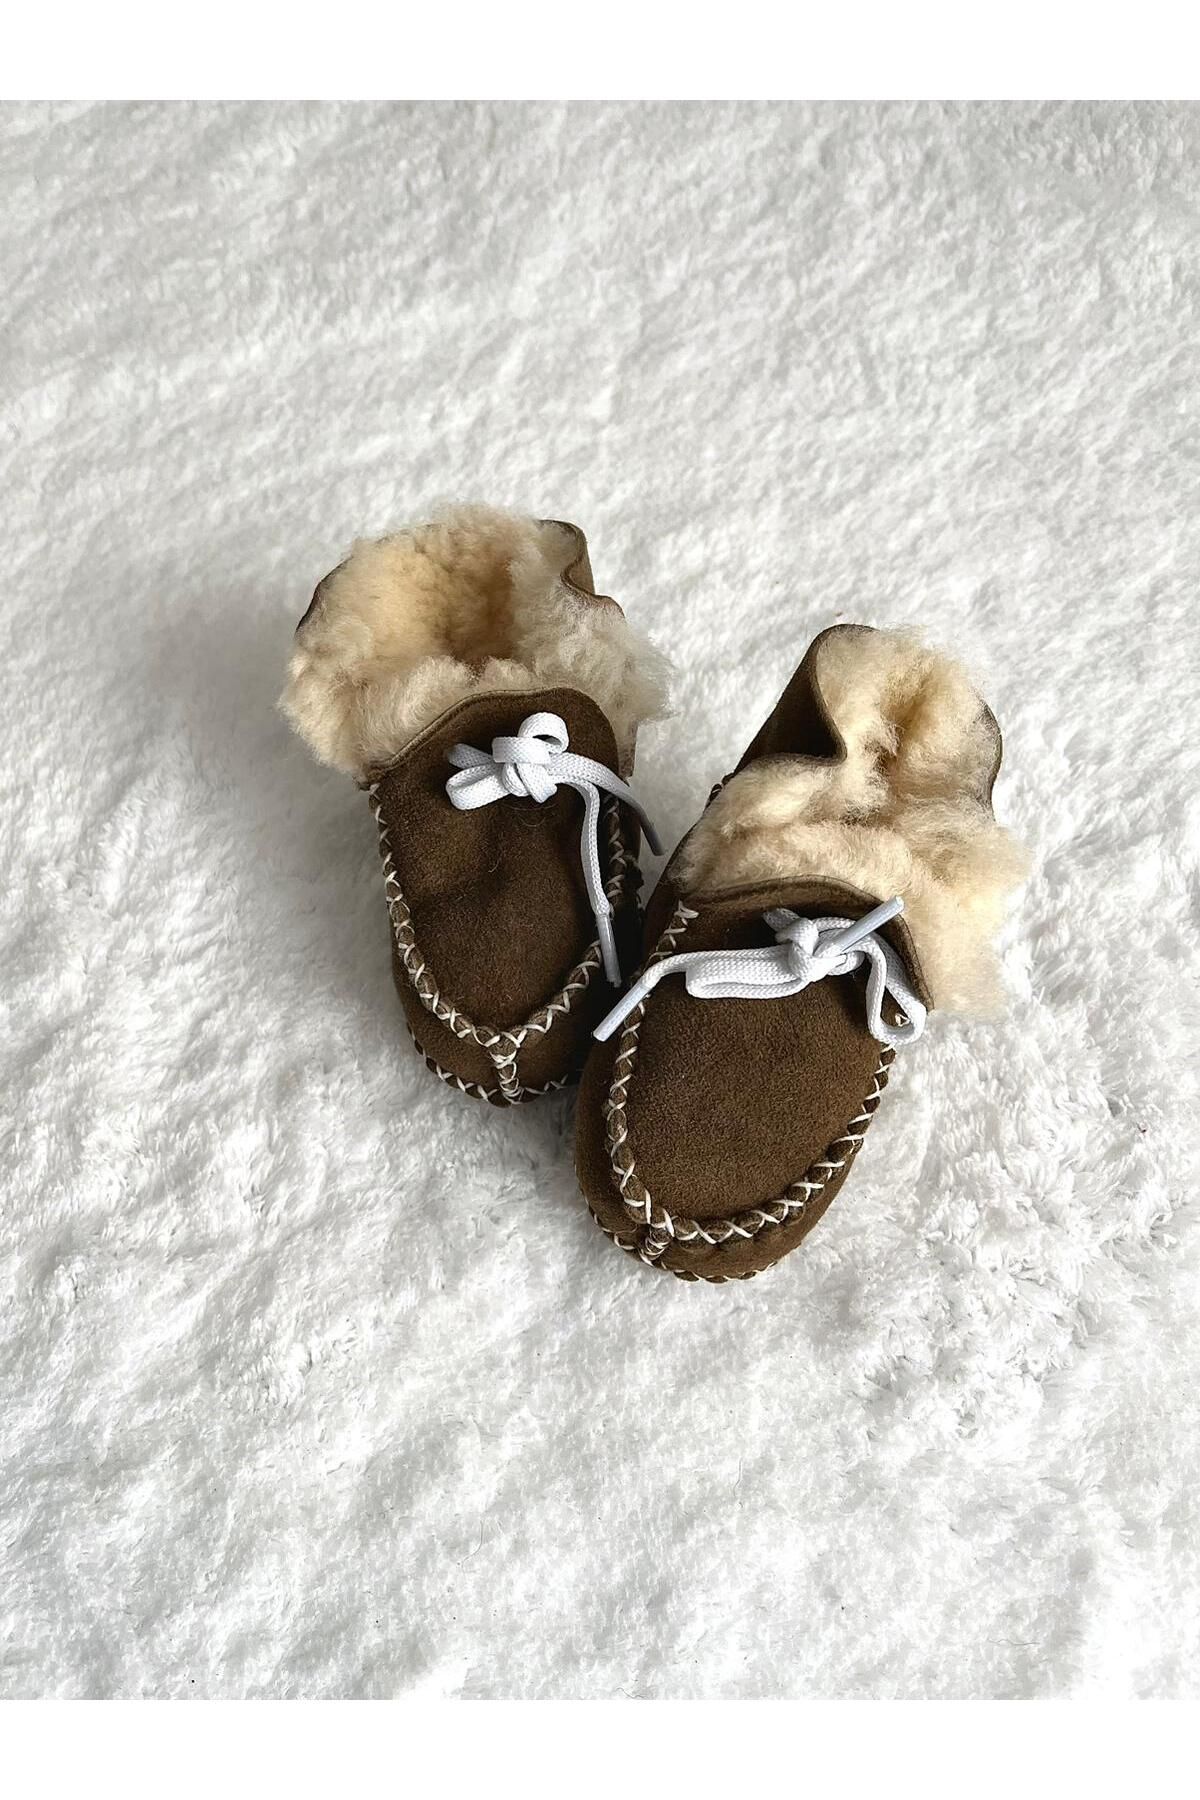 COOLMINIES Organik Bebek Ayakkabısı Süet Patik Kışlık Peluş Unisex Ev Botu Ev Patiği